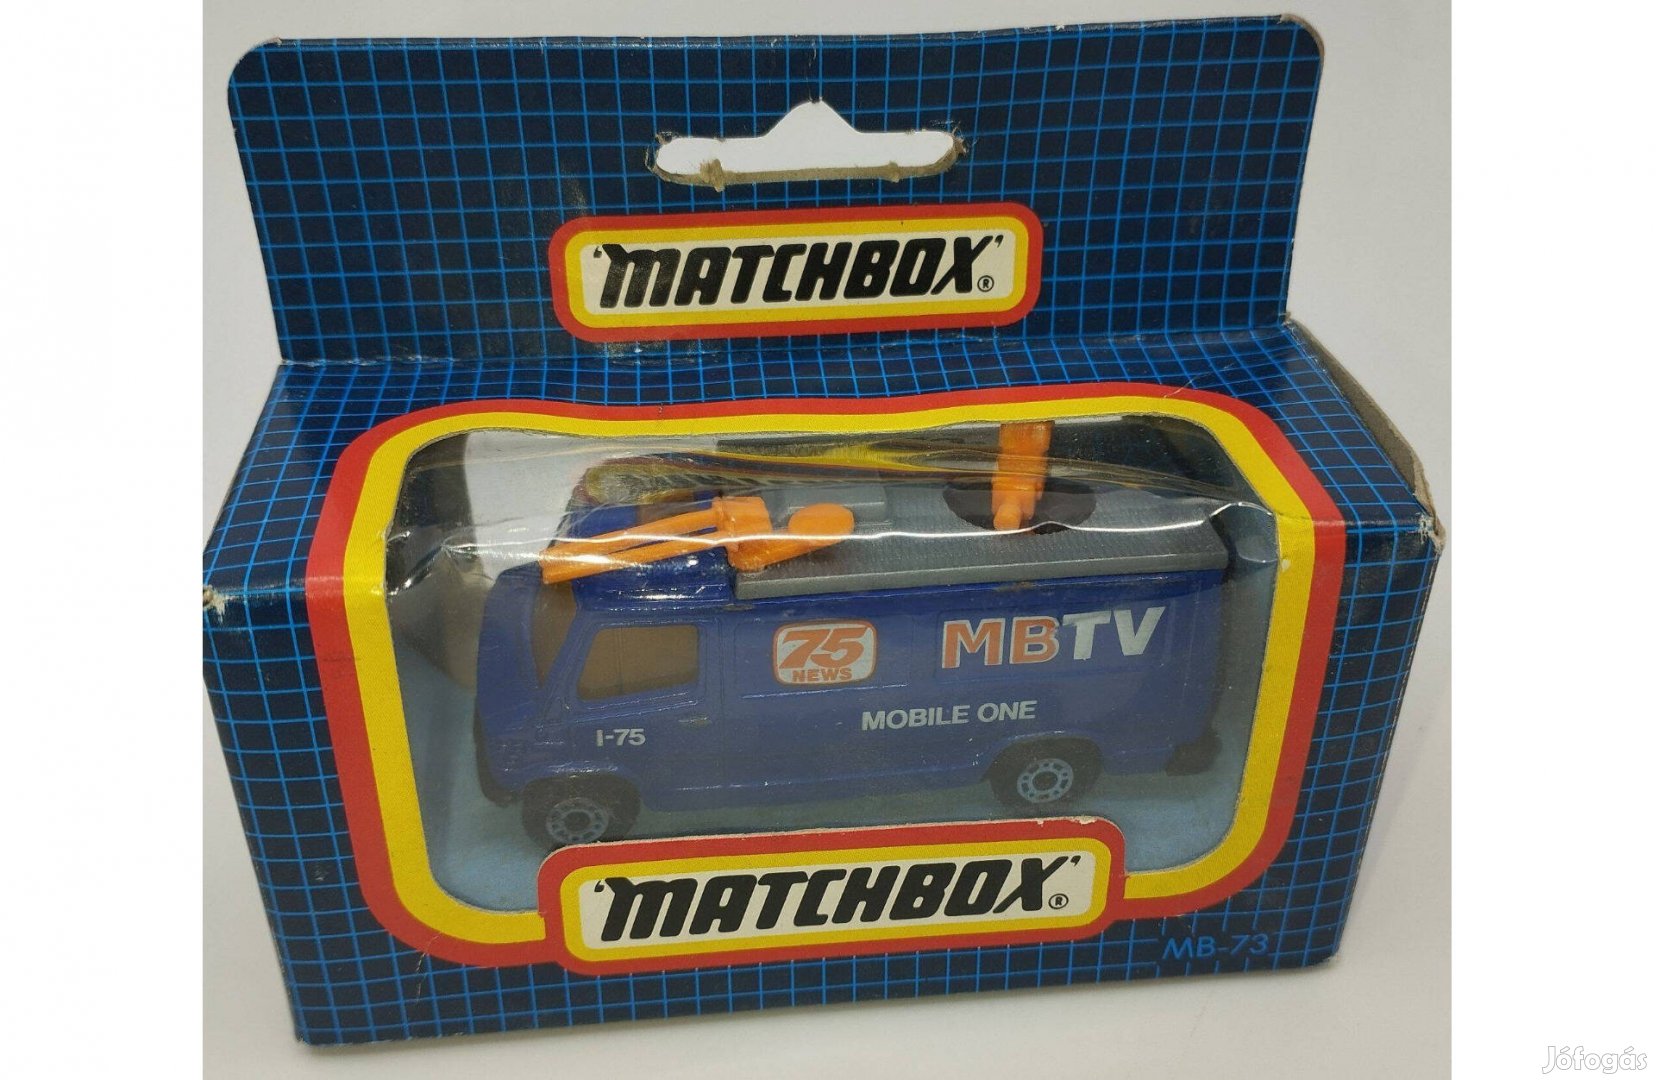 Matchbox MB-73 TV News Truck